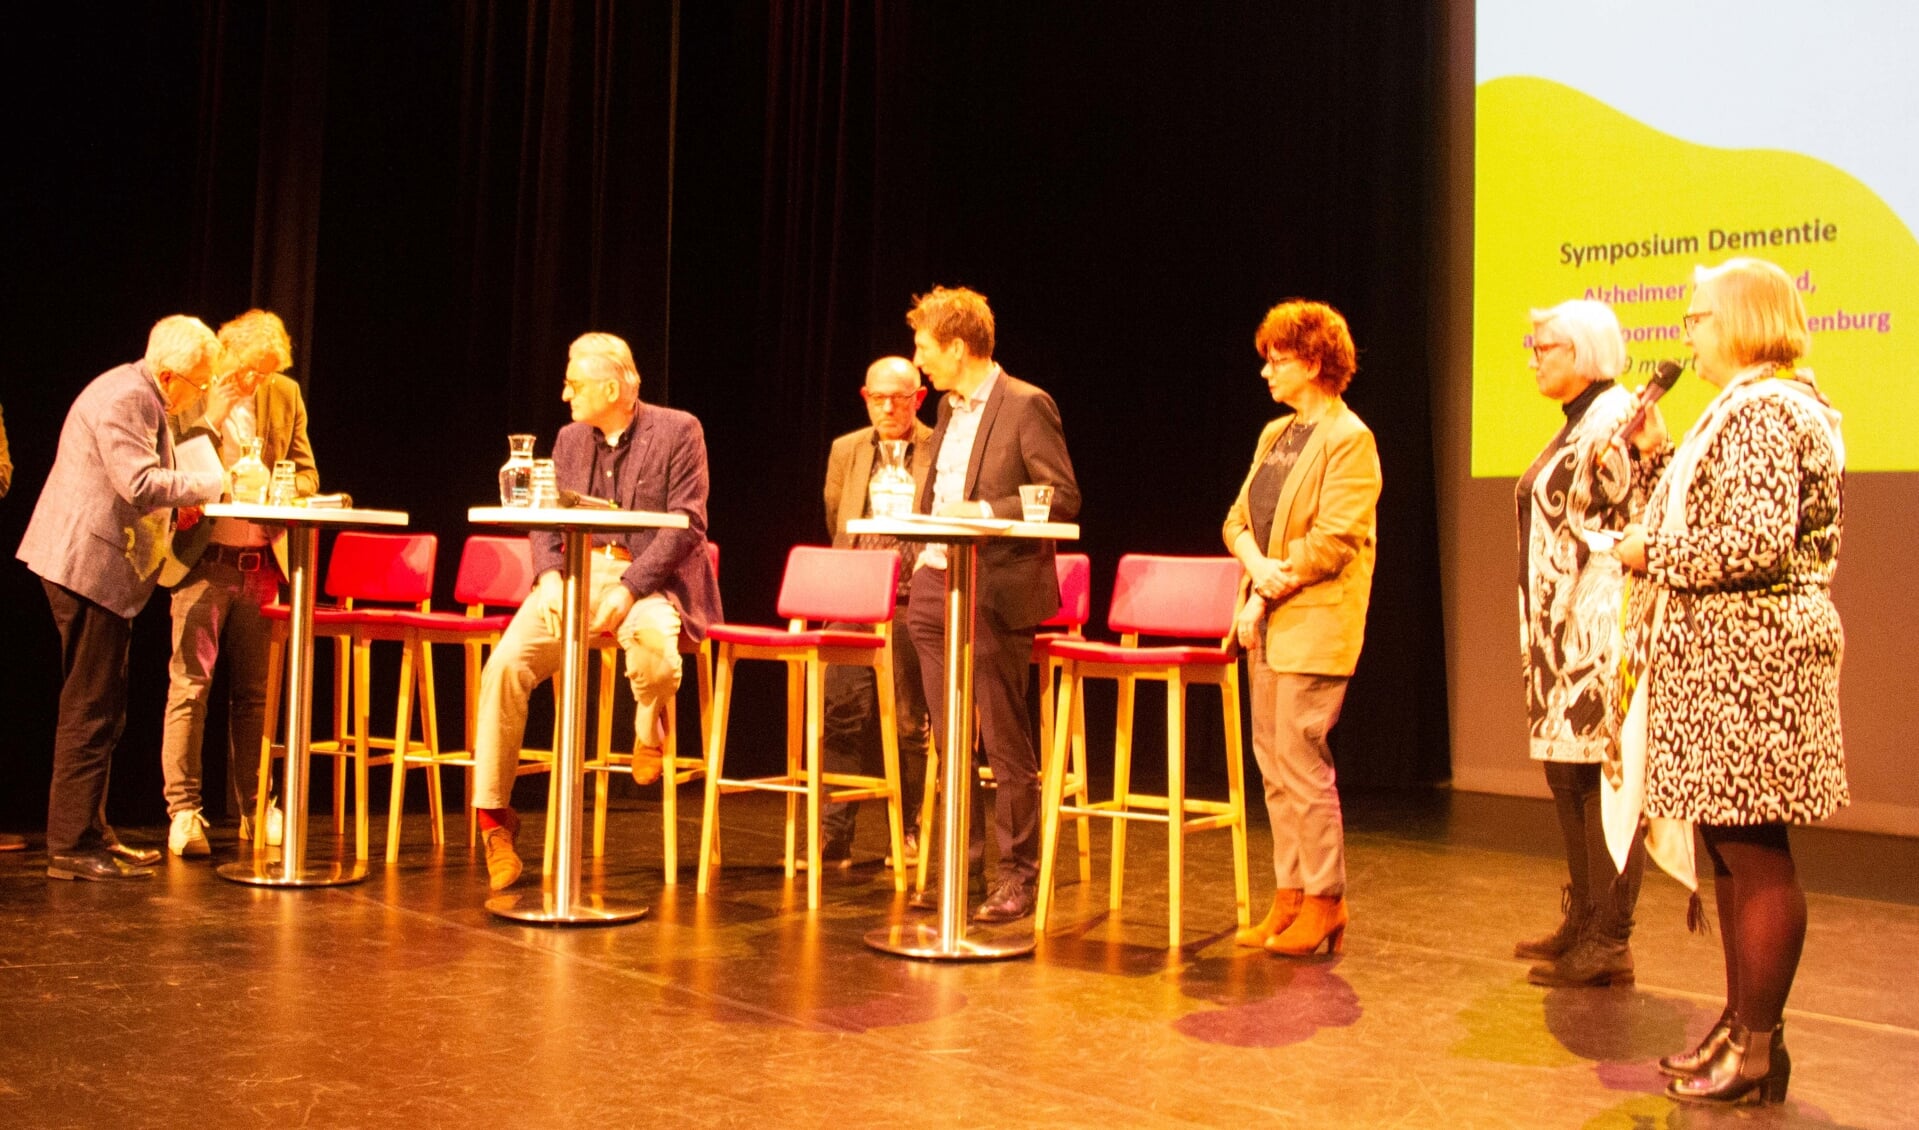 Tijdens het symposium werd het convenant dementievriendelijke samenleving getekend door gemeentes, welzijnsorganisaties, en Alzheimer Nederland afd Voorne-Putten en Rozenburg.